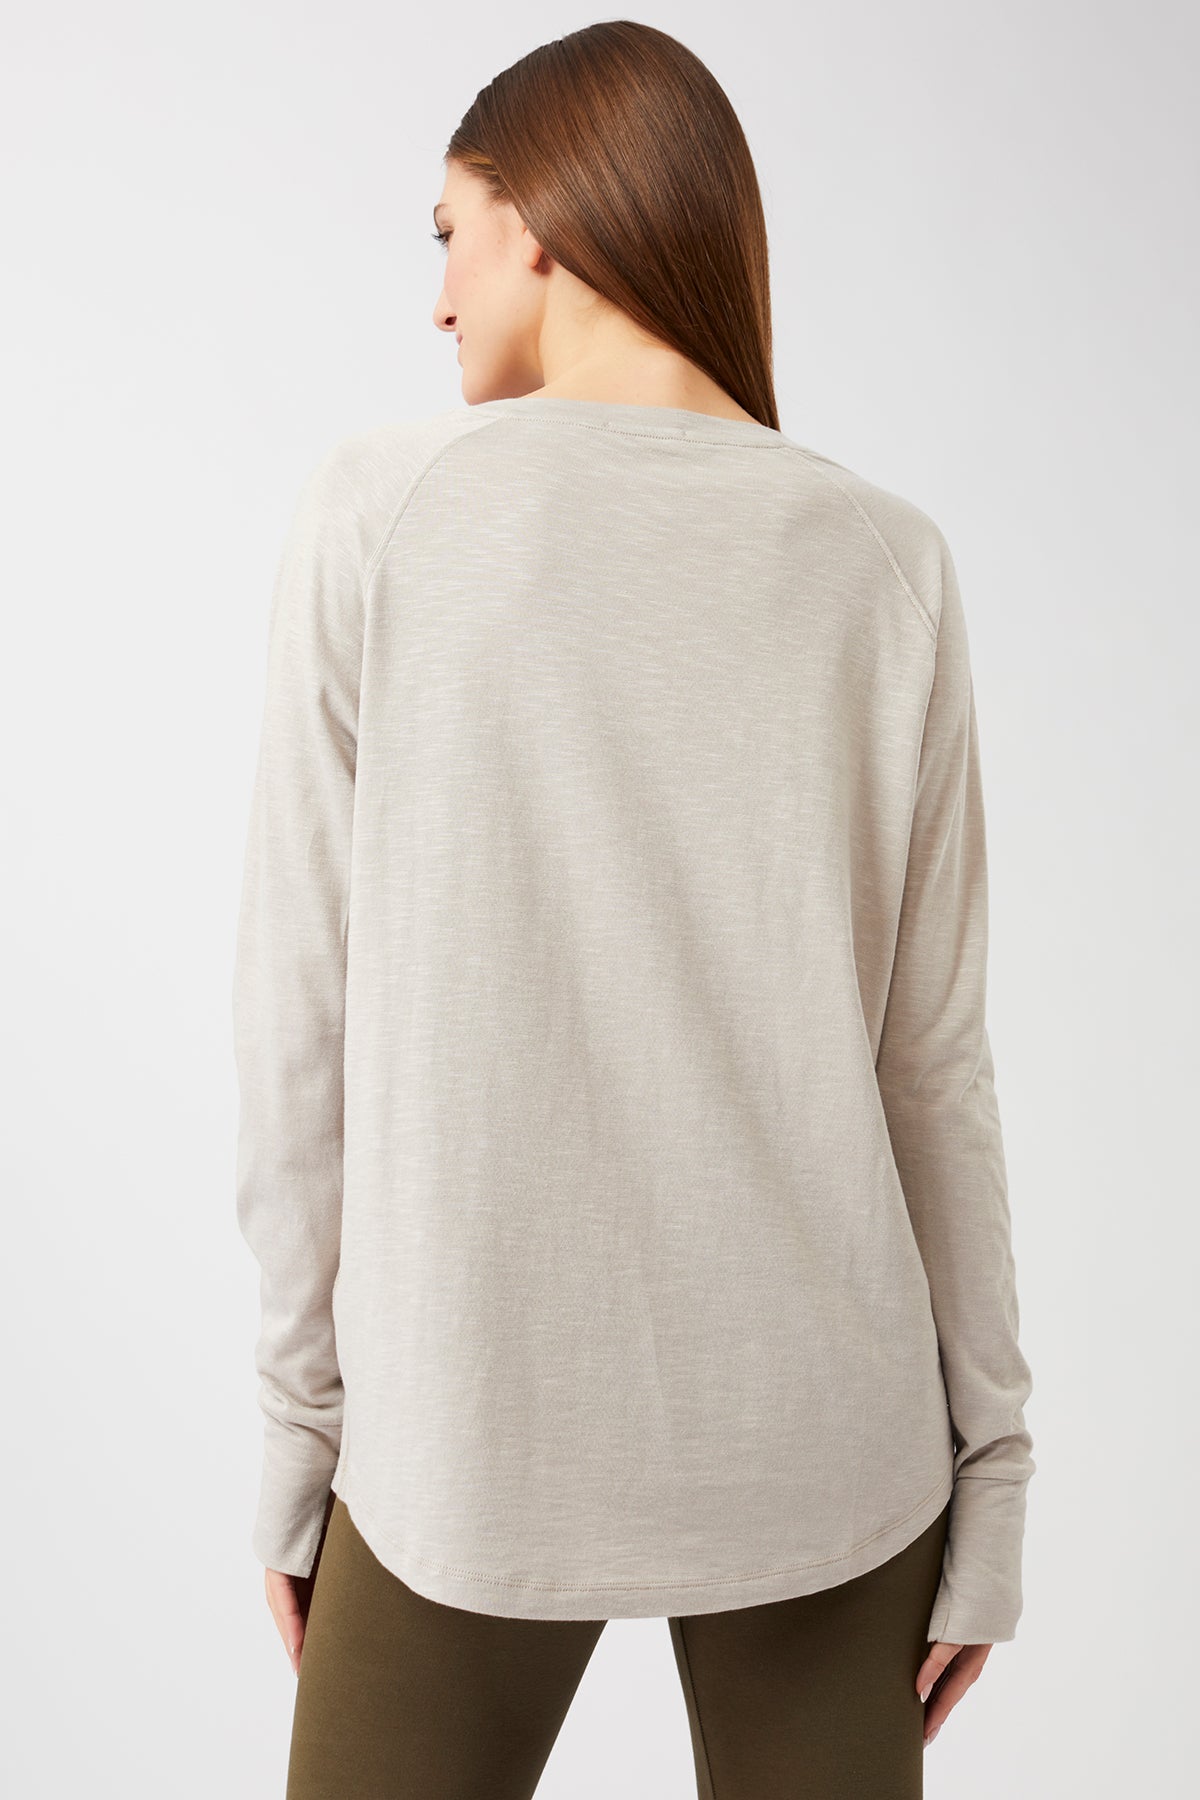 Mandala Yoga Shirt Beige Rückseite - Active Long Sleeve